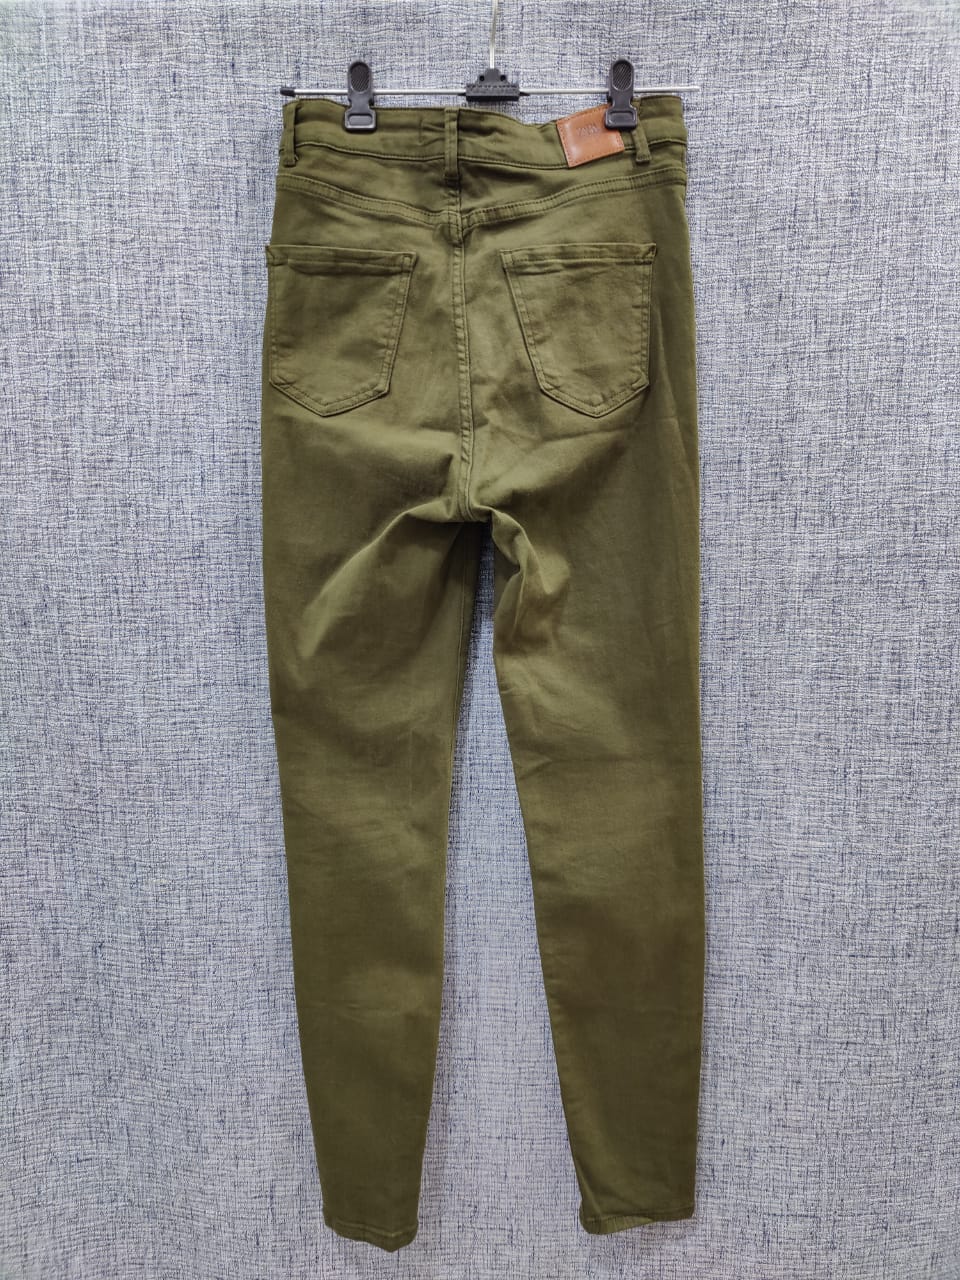 1960s Kids Wrangler Olive Green Denim Jeans 22 - Etsy